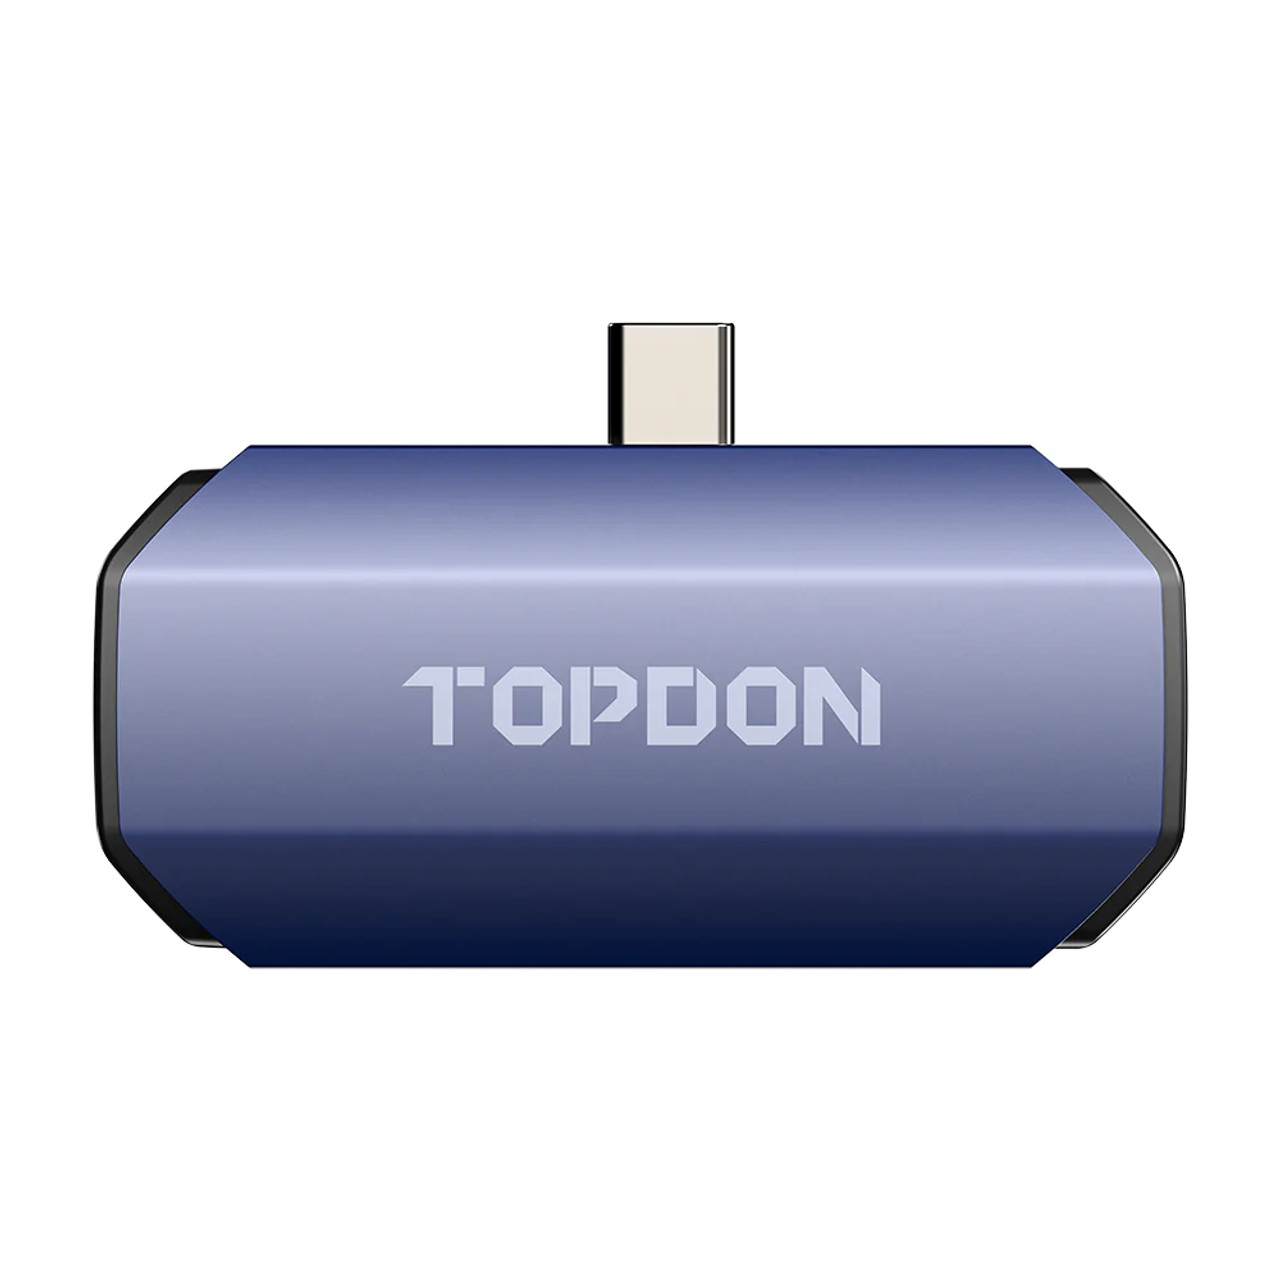 Cámara térmica para Android, TOPDON TC001 256x192 IR de alta